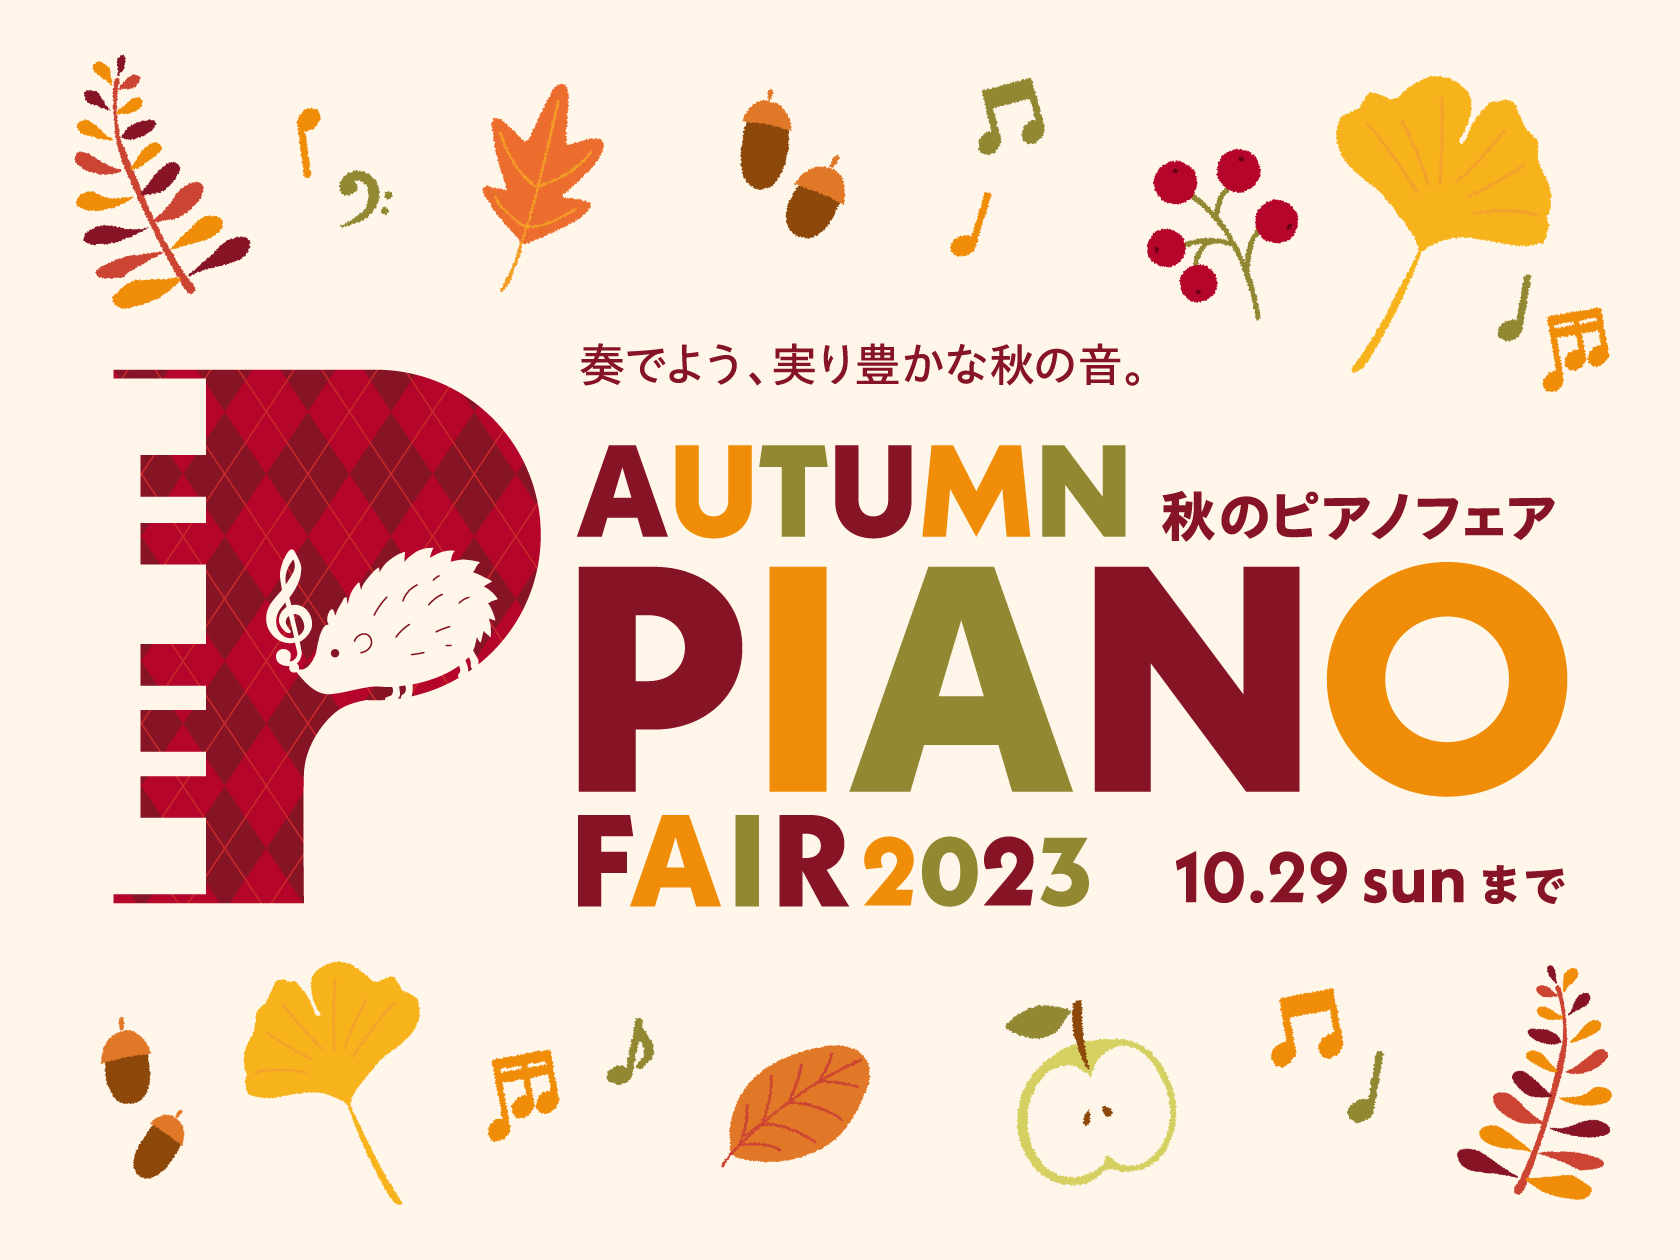 9月9日（土）から10月29日（日）まで、秋のピアノフェアを開催しております♪ この期間だけのお得な特典が付きますので、是非ご来店ください！ CONTENTSYAMAHAKAWAIRolandCASIOお問い合わせYAMAHA KAWAI Roland CASIO お問い合わせ